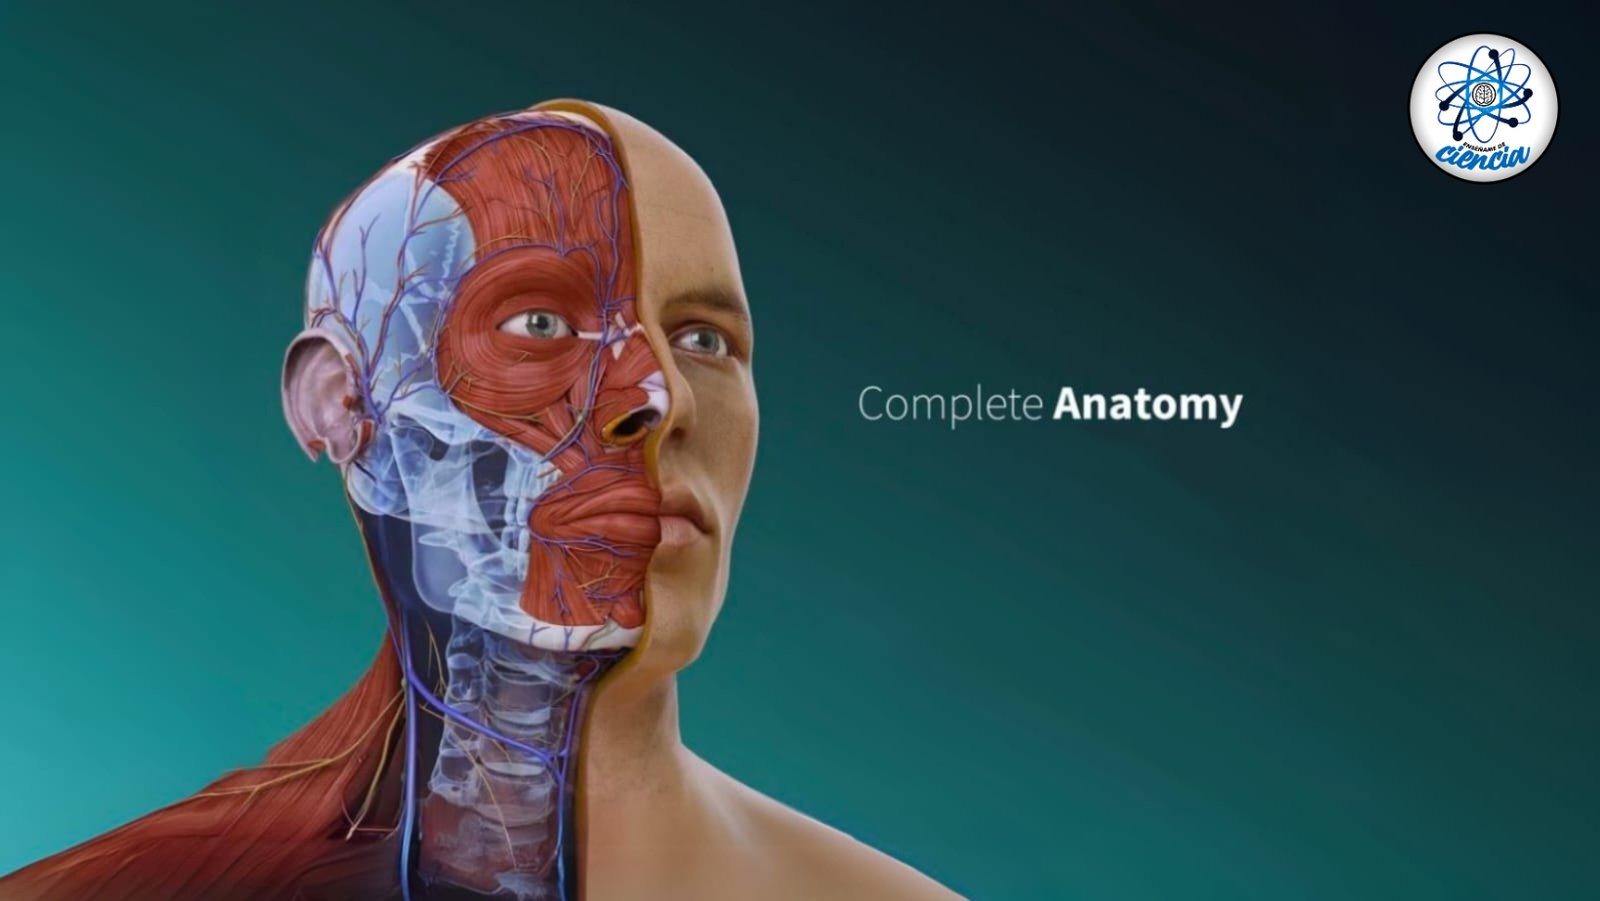 ¡Adquiere conocimientos anatómicos gratis desde casa con la Universidad del Rosario!